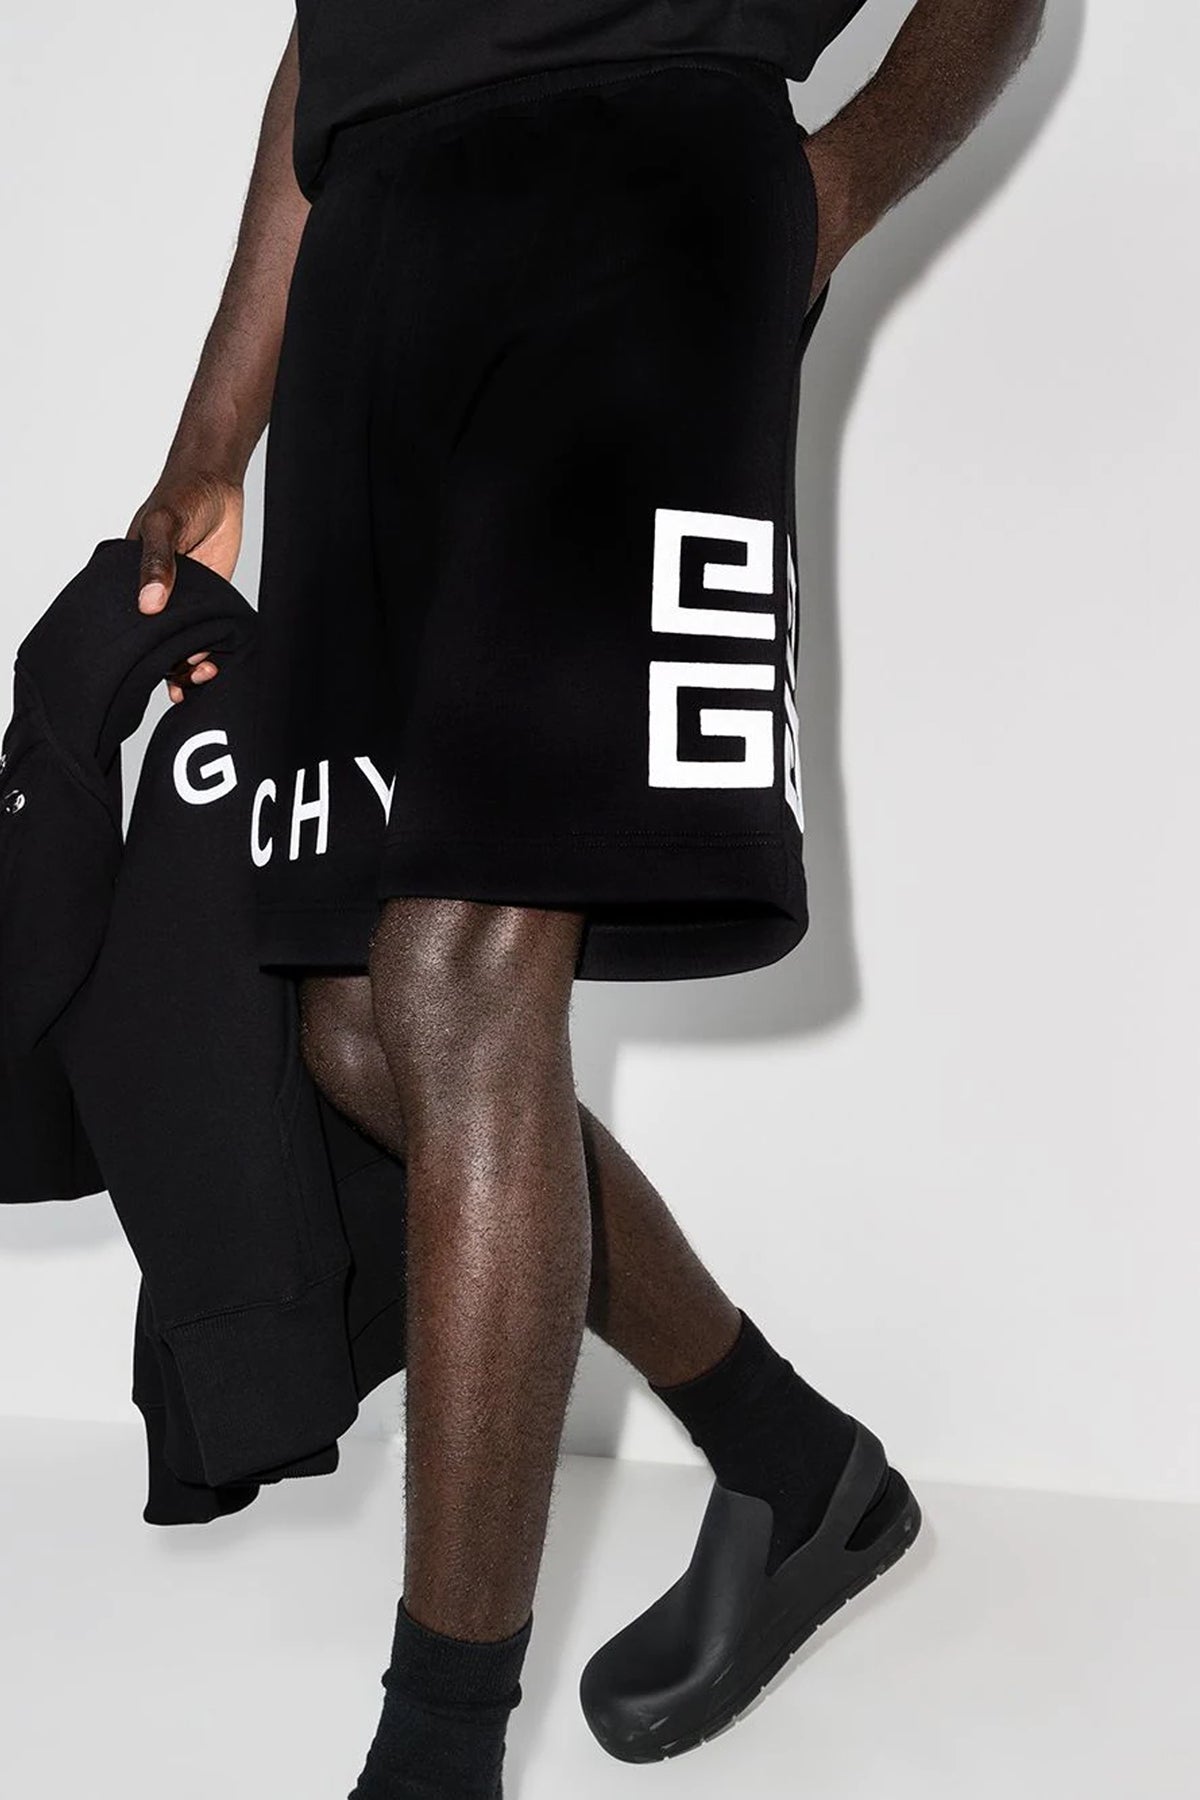 Givenchy brushed logo track shorts